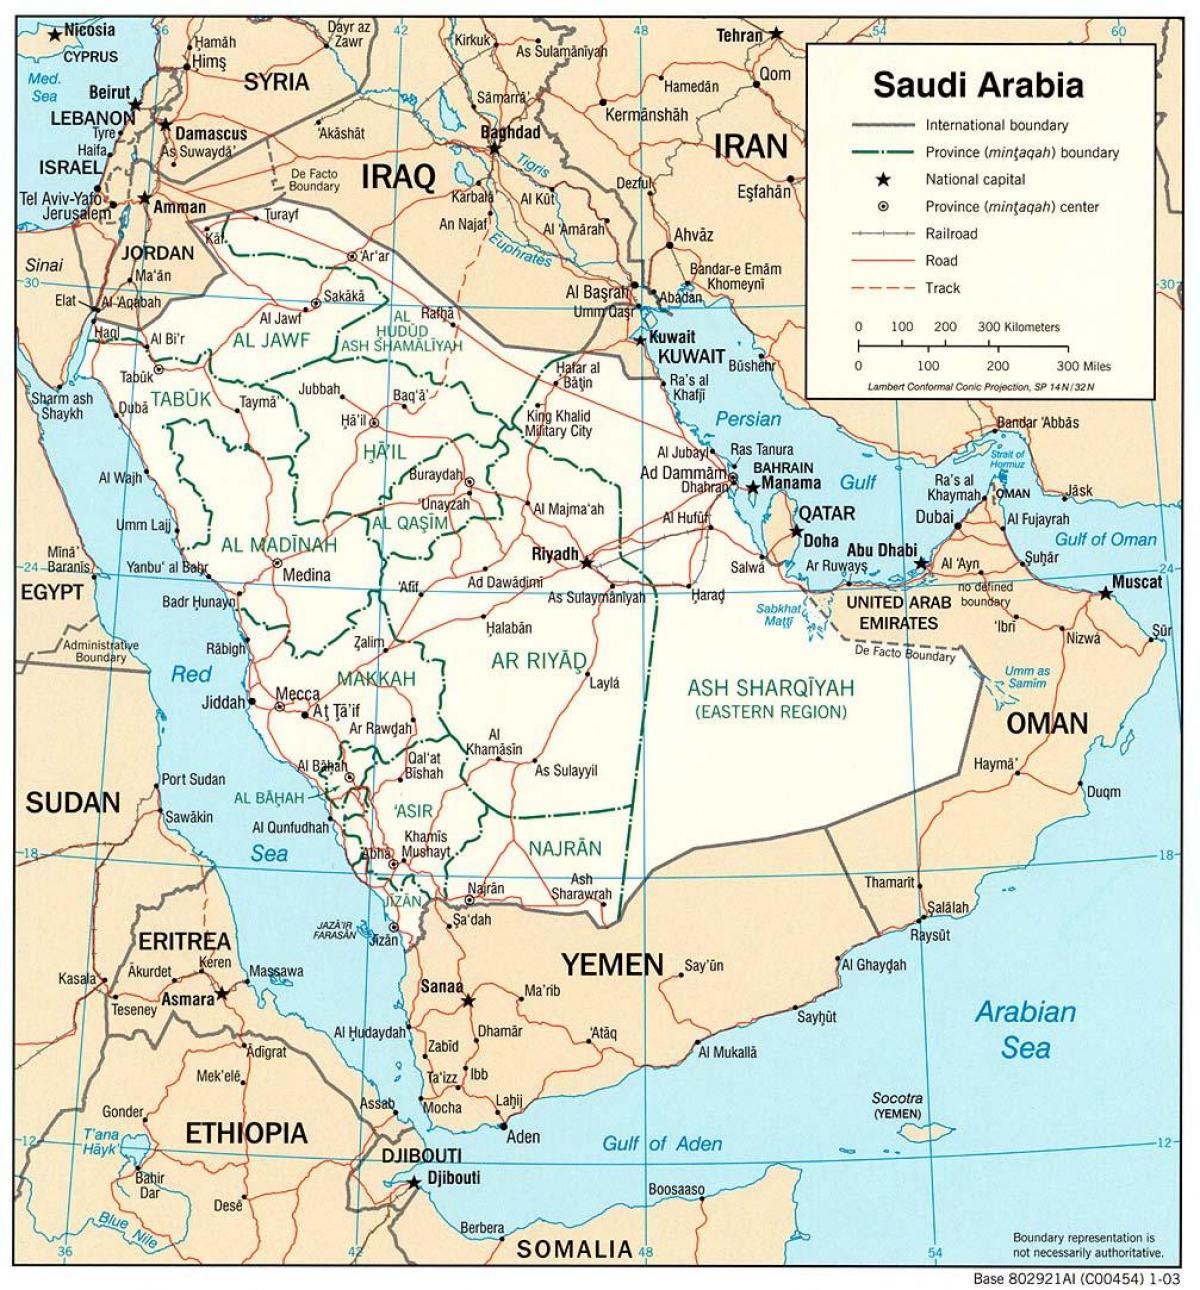 Σαουδική Αραβία πλήρης χάρτης